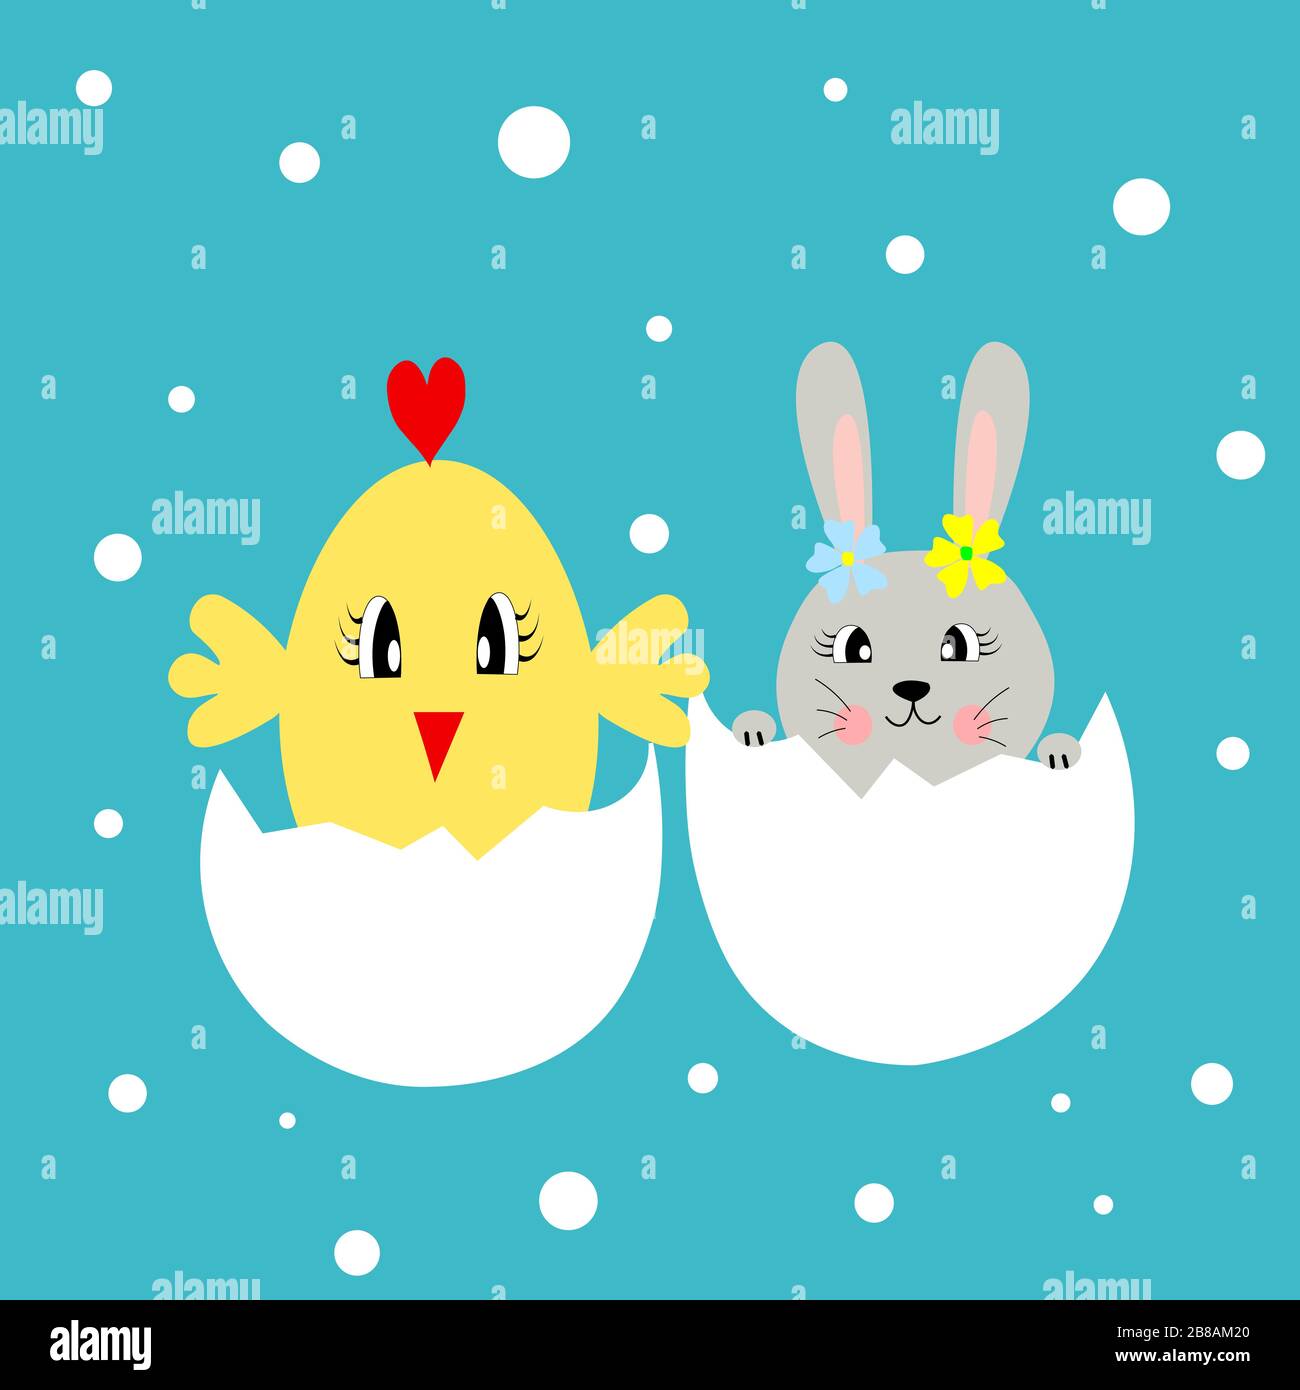 easter chicken egg cartoon illustration illustration Stock Vector Image ...